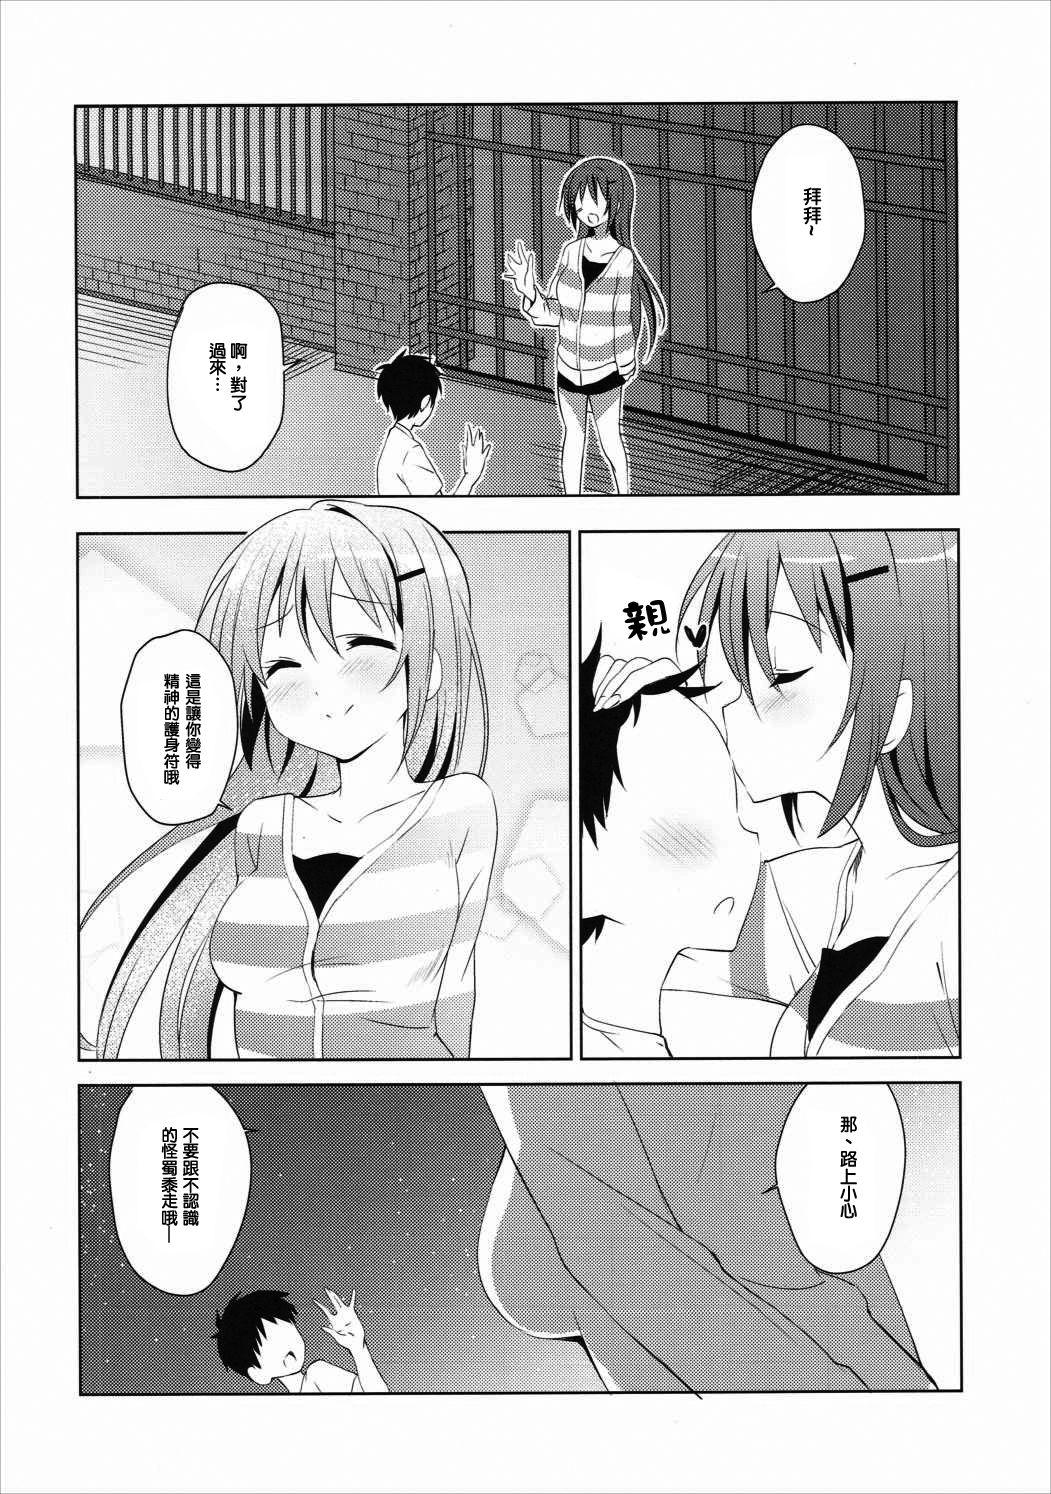 Shemale Sex Gochuumon no Rize desu - Gochuumon wa usagi desu ka Ex Girlfriends - Page 8